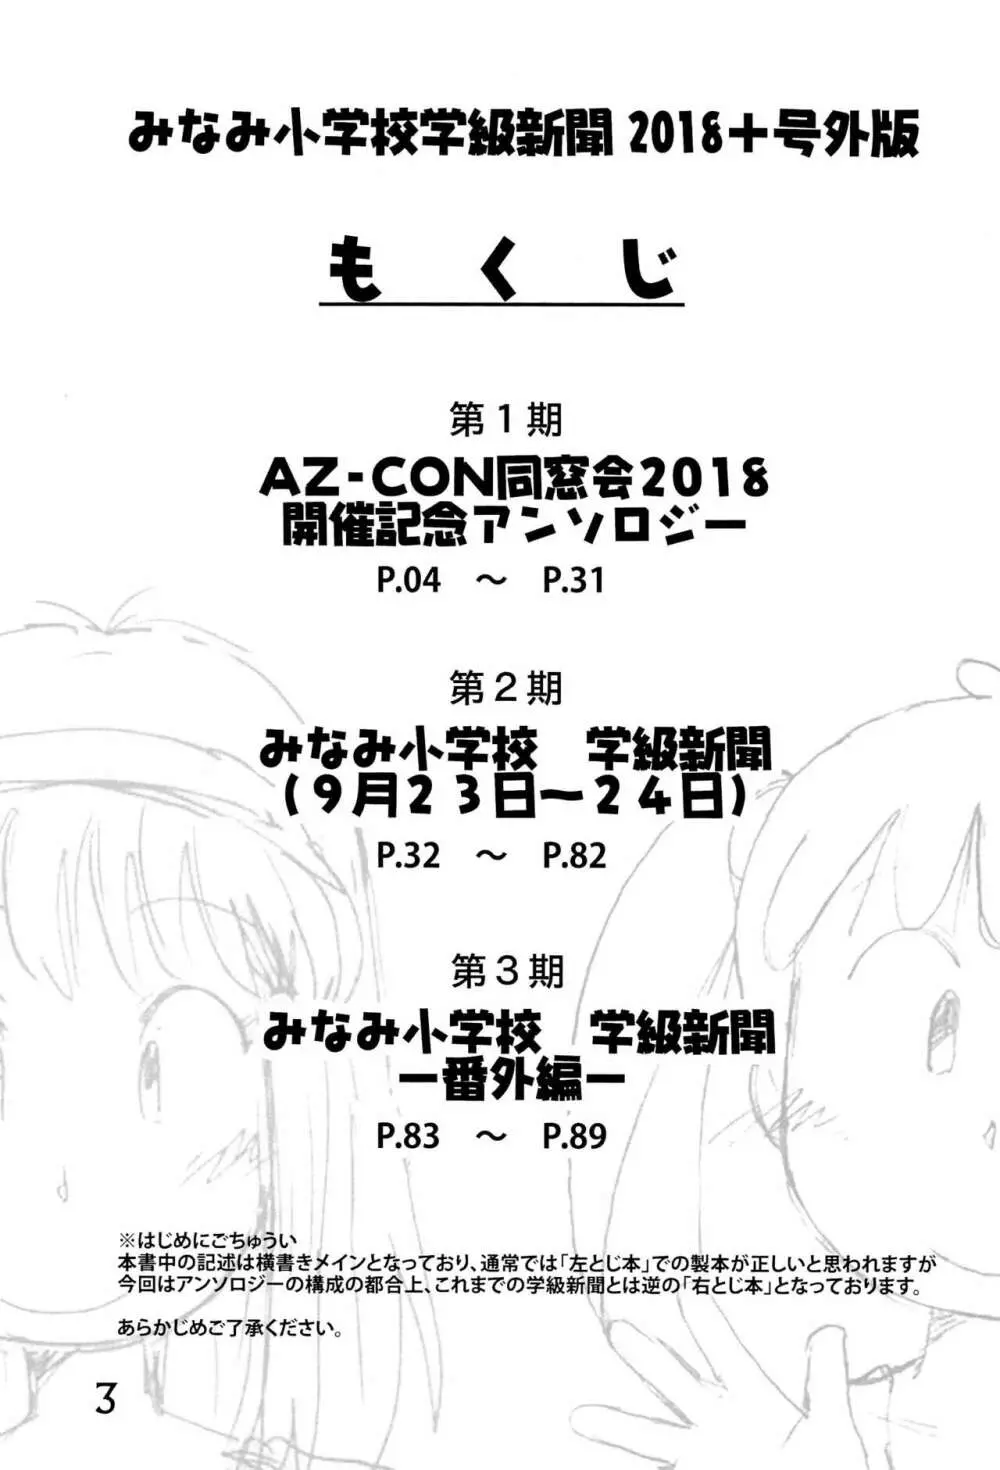 みなみ小学校学級新聞2018+号外版 3ページ